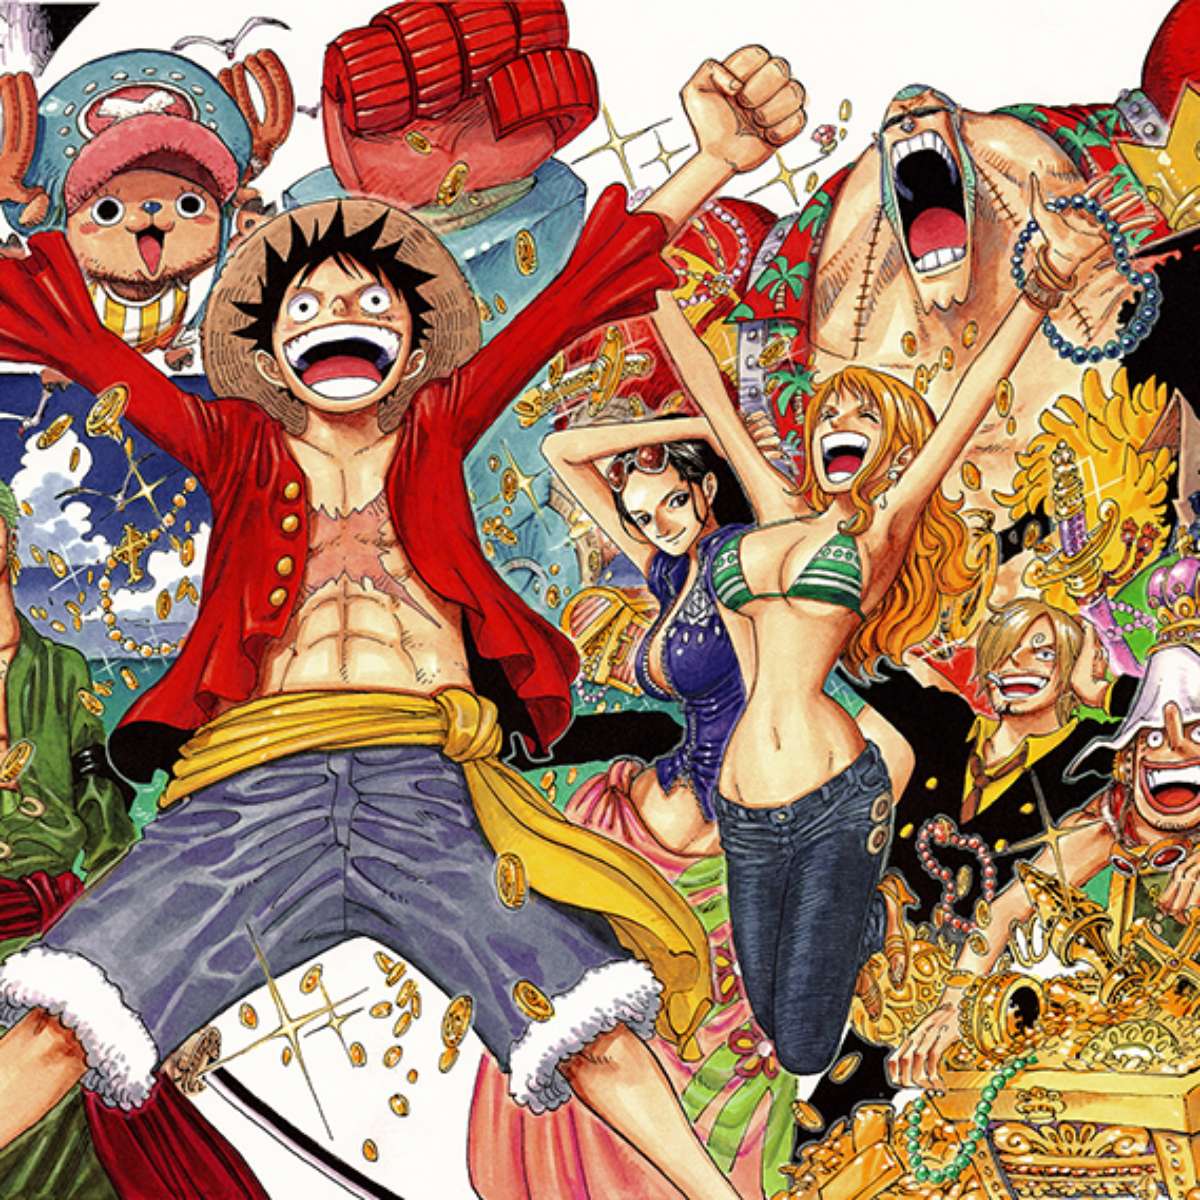 Assista One Piece temporada 5 episódio 1 em streaming